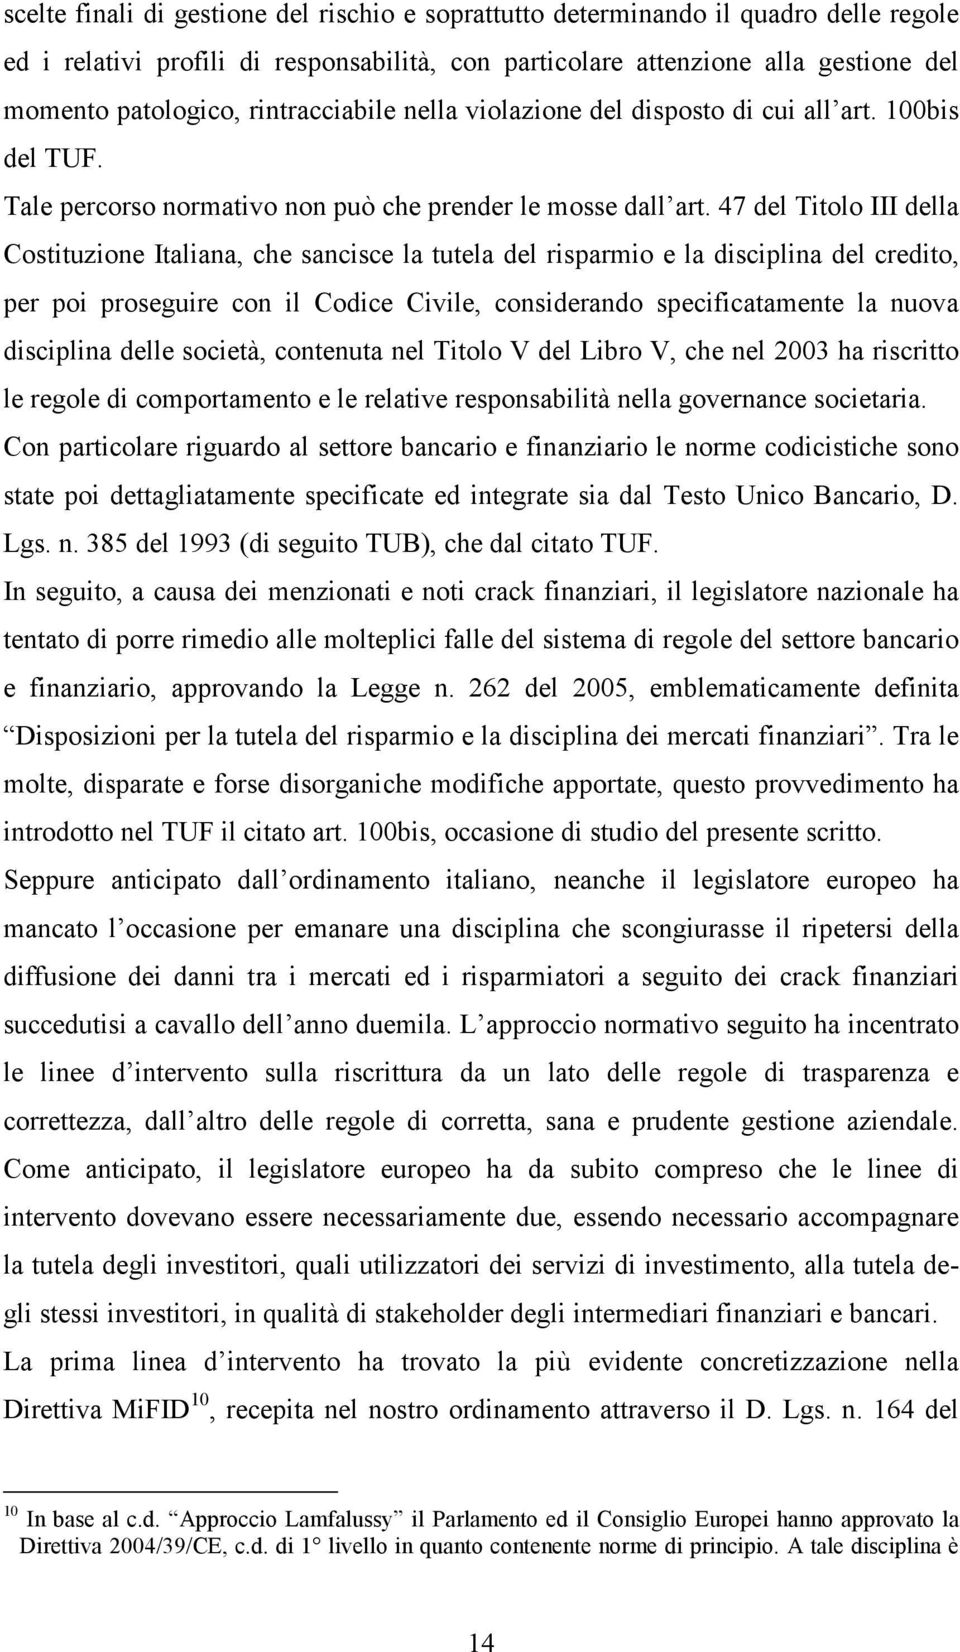 47 del Titolo III della Costituzione Italiana, che sancisce la tutela del risparmio e la disciplina del credito, per poi proseguire con il Codice Civile, considerando specificatamente la nuova